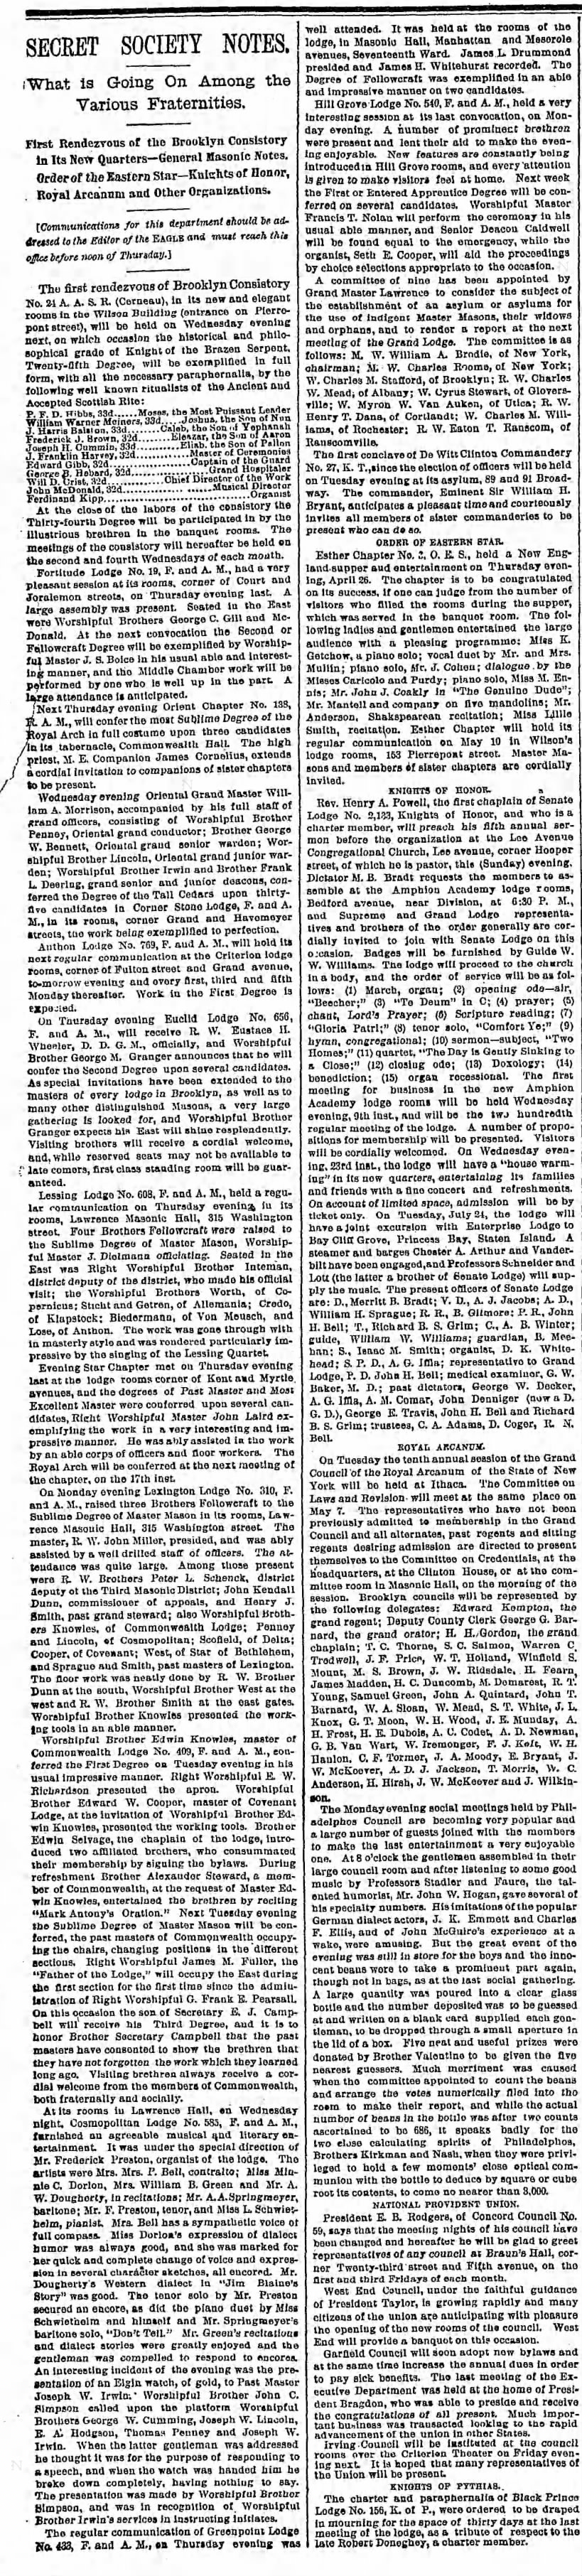 Henry T. Dana; The Brooklyn Daily Eagle (Brooklyn, NY) May 6, 1888